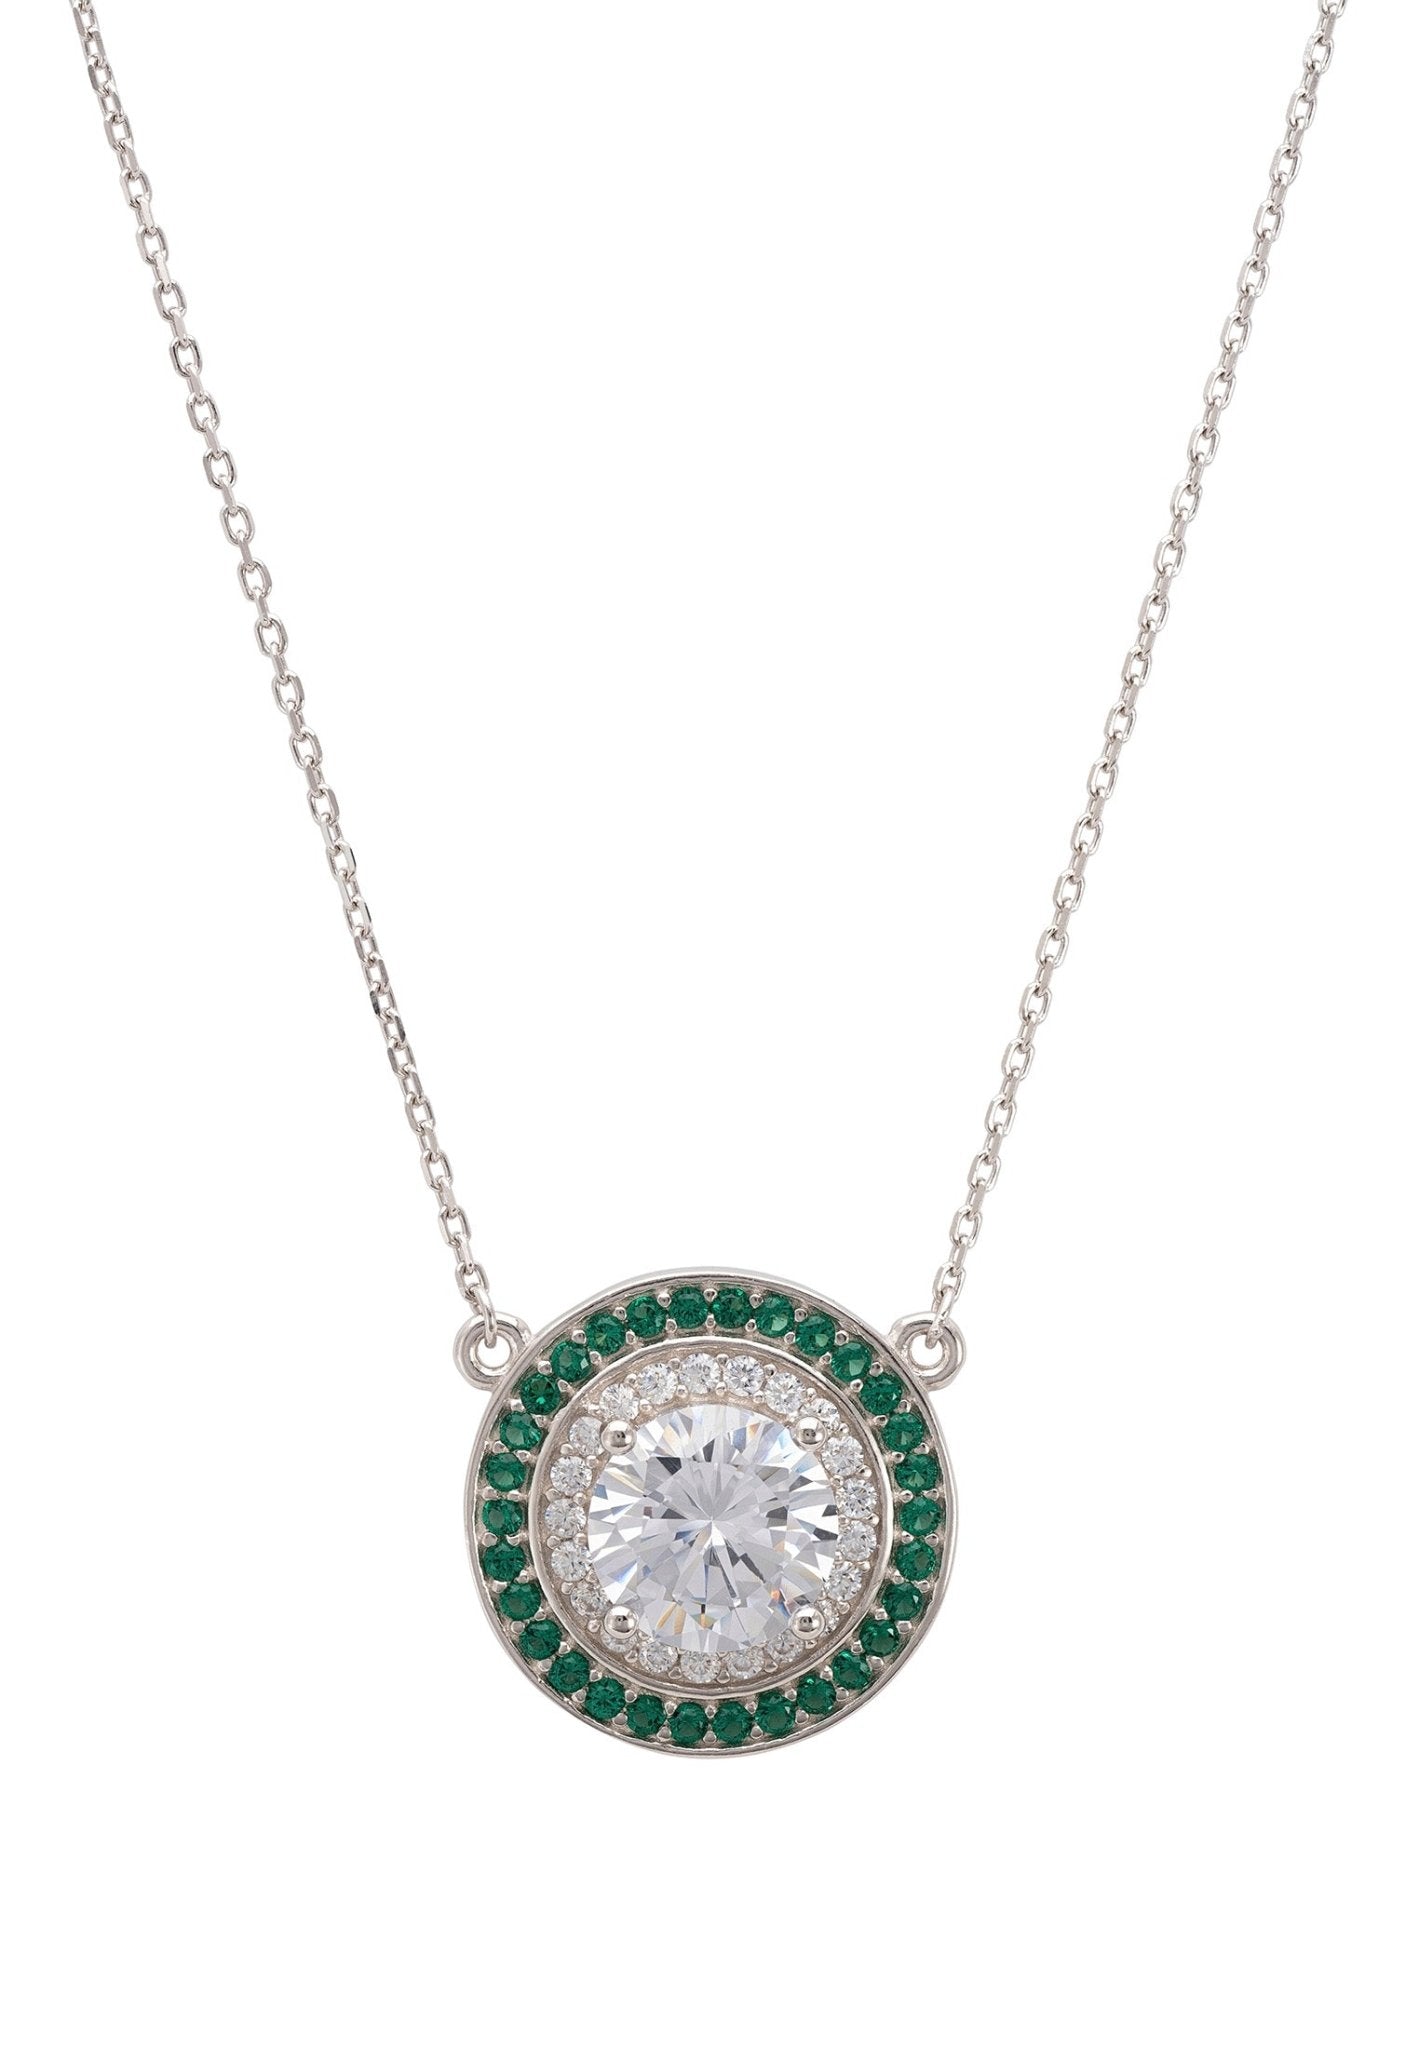 Balmoral Pendant Necklace Emerald Green Cz Silver - LATELITA